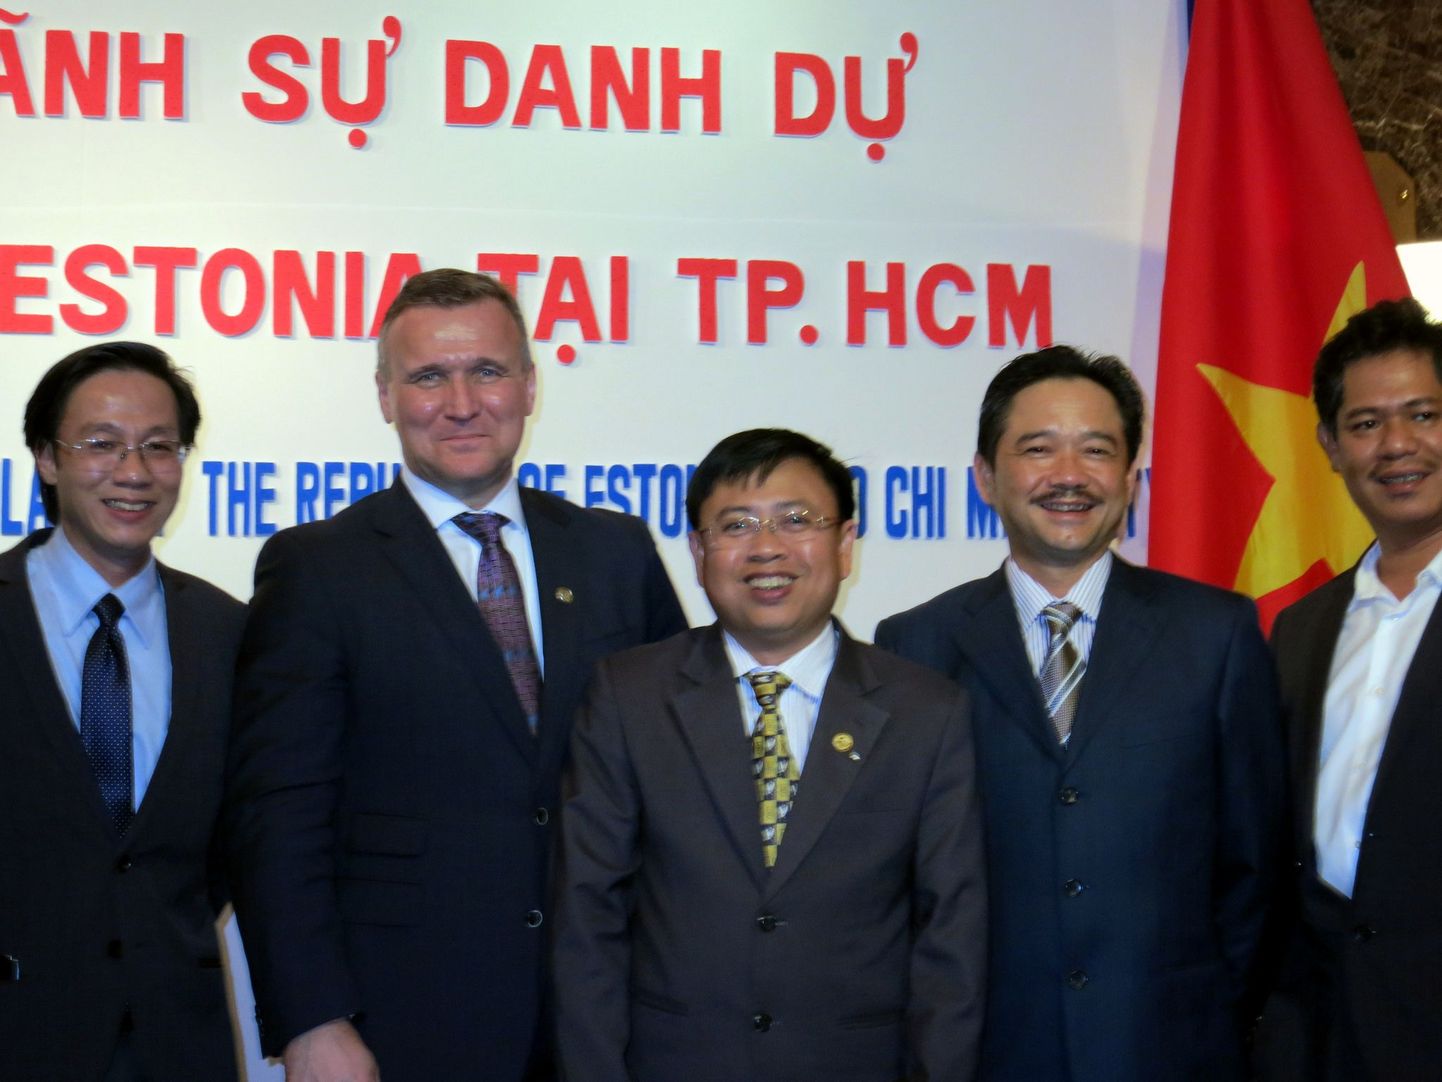 Eesti aukonsulaadi avamine Vietnamis